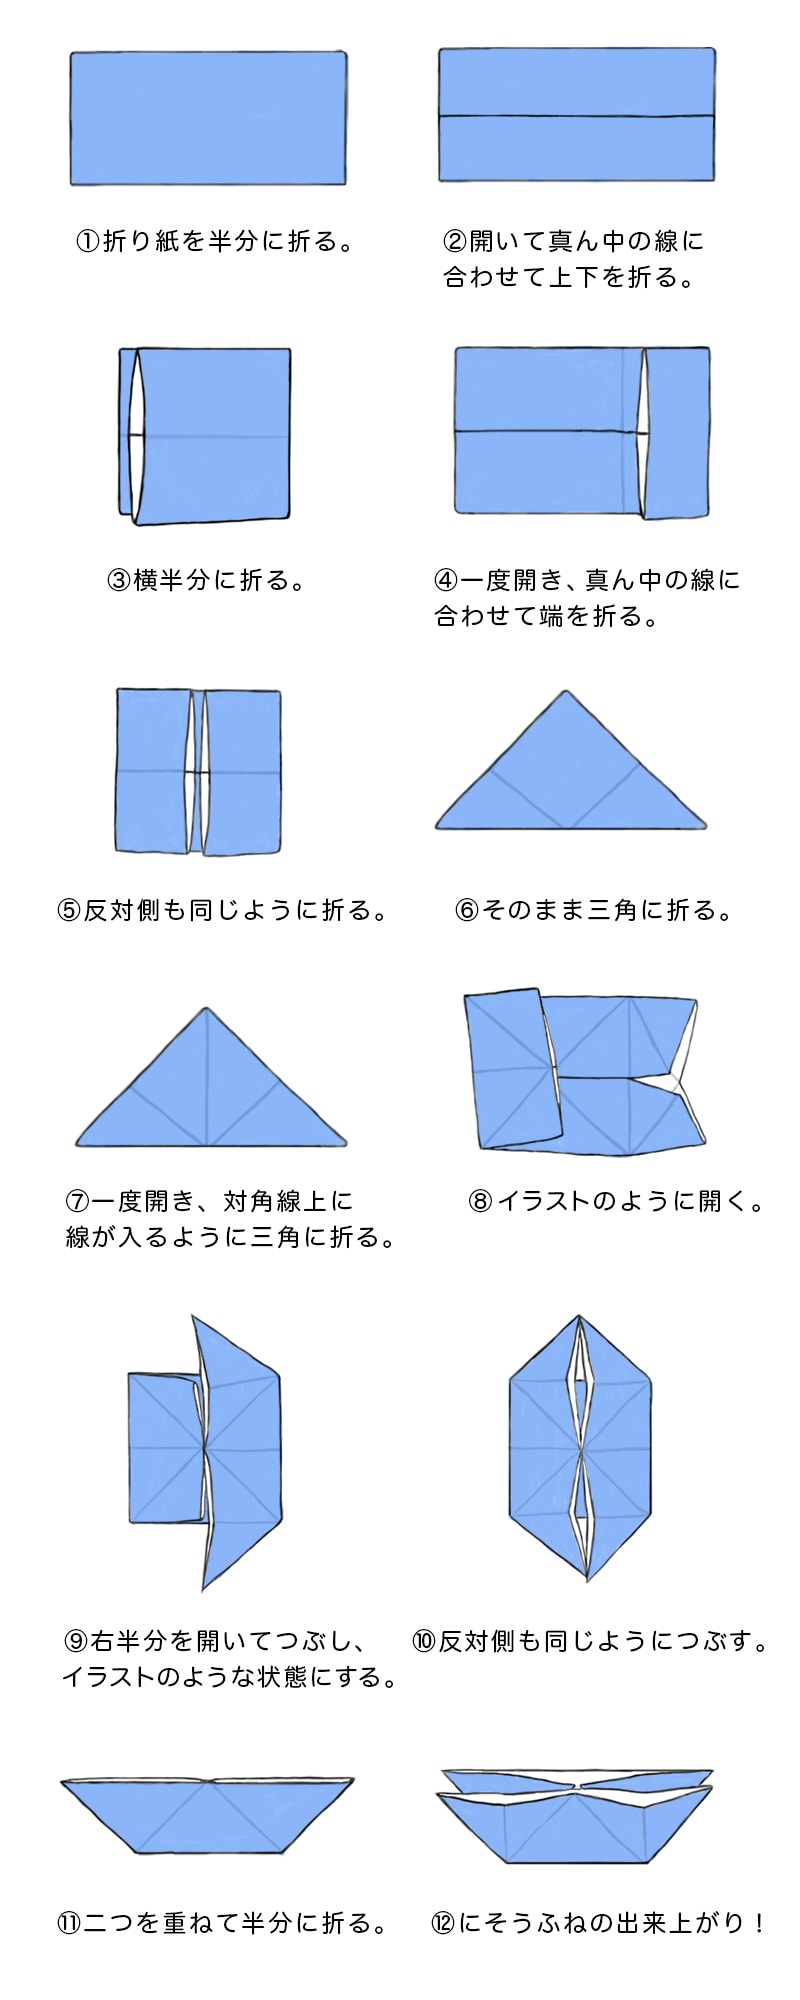 シモジマ 簡単に折れる 折り紙の折り方特集 包装用品 店舗用品の通販サイト